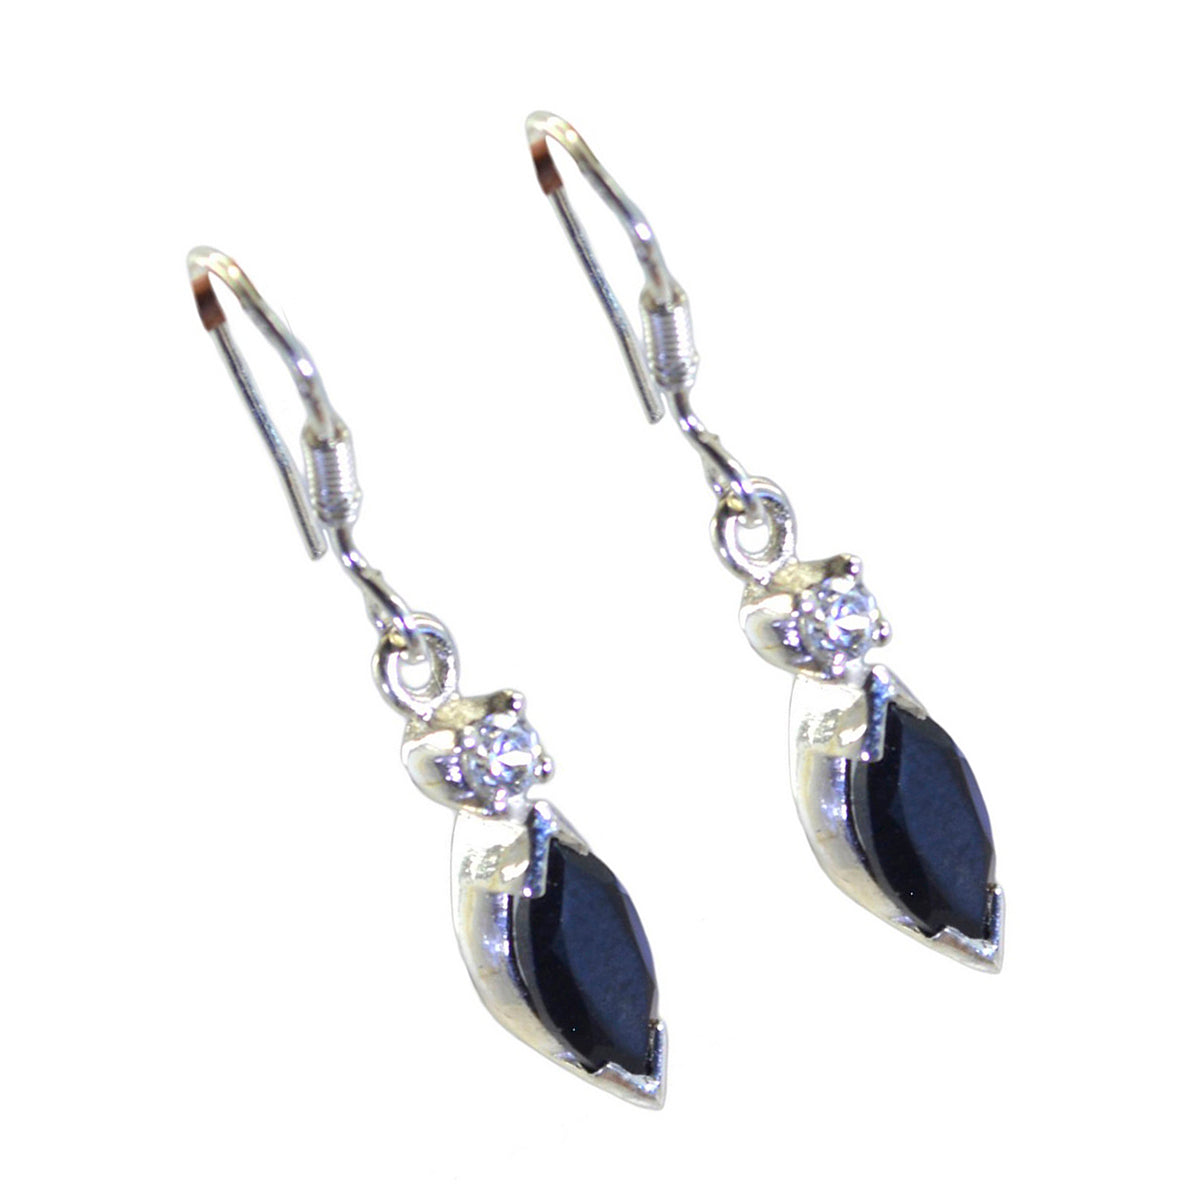 Riyo Winsome Sterling-Silber-Ohrring für Mädchen, schwarzer Onyx-Ohrring, Lünettenfassung, schwarzer Ohrring, baumelnder Ohrring